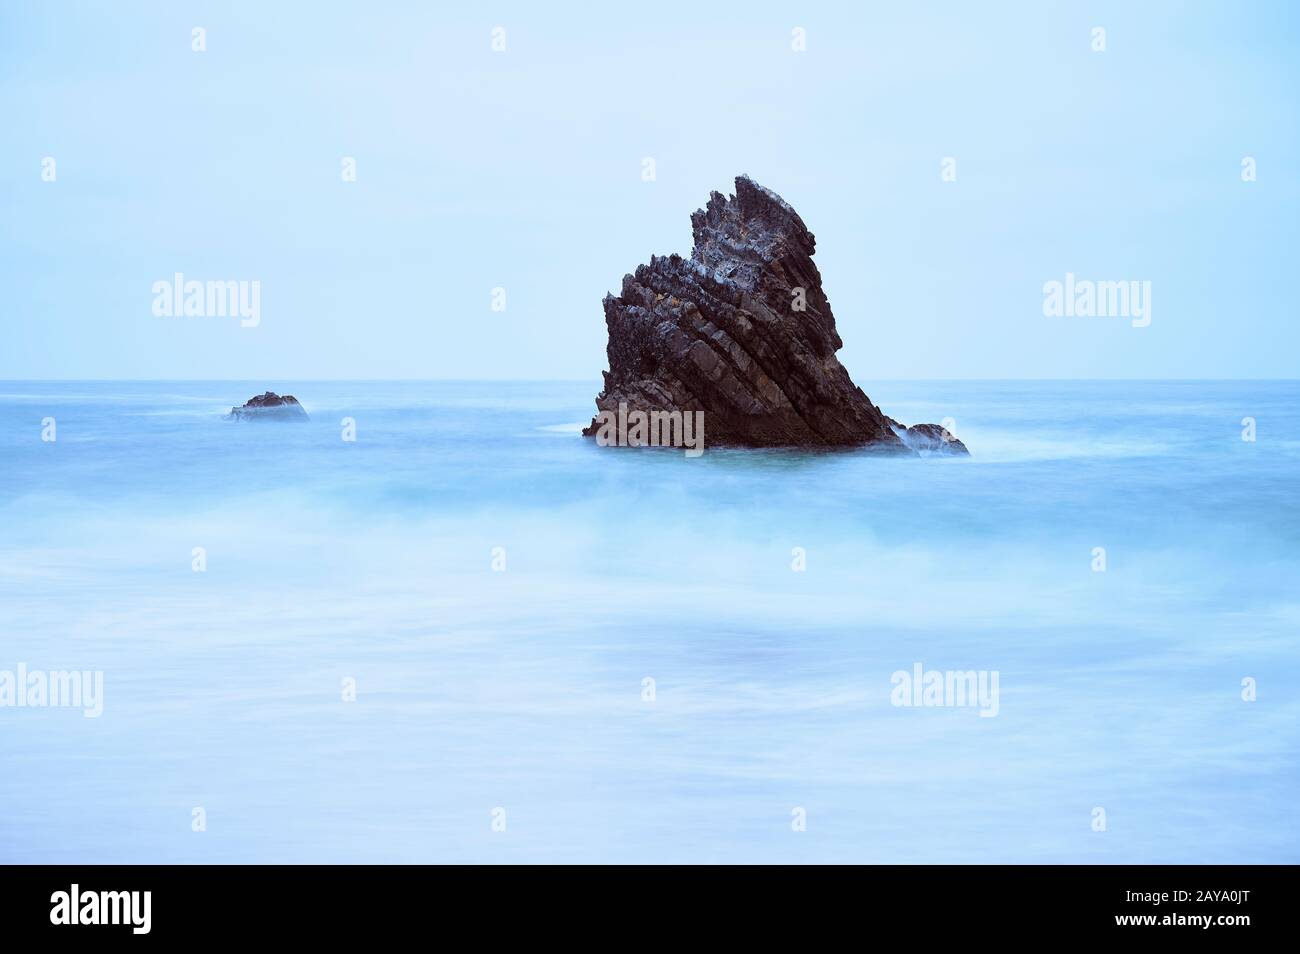 https://c8.alamy.com/comp/2AYA0JT/long-exposure-of-sharp-rock-on-the-sea-2AYA0JT.jpg